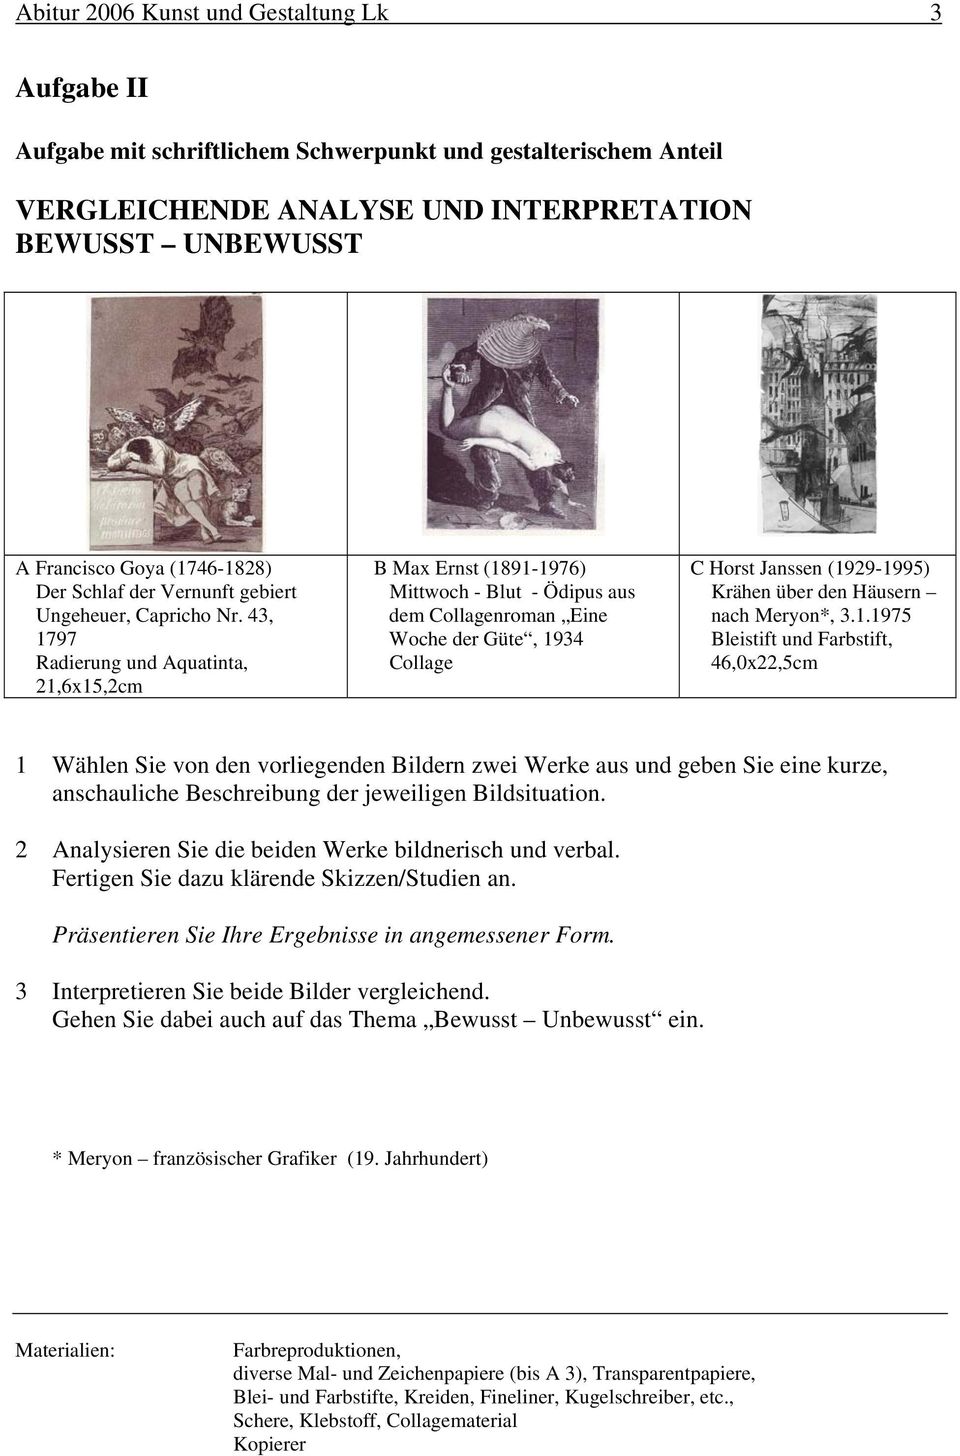 43, 1797 Radierung und Aquatinta, 21,6x15,2cm B Max Ernst (1891-1976) Mittwoch - Blut - Ödipus aus dem Collagenroman Eine Woche der Güte, 1934 Collage C Horst Janssen (1929-1995) Krähen über den